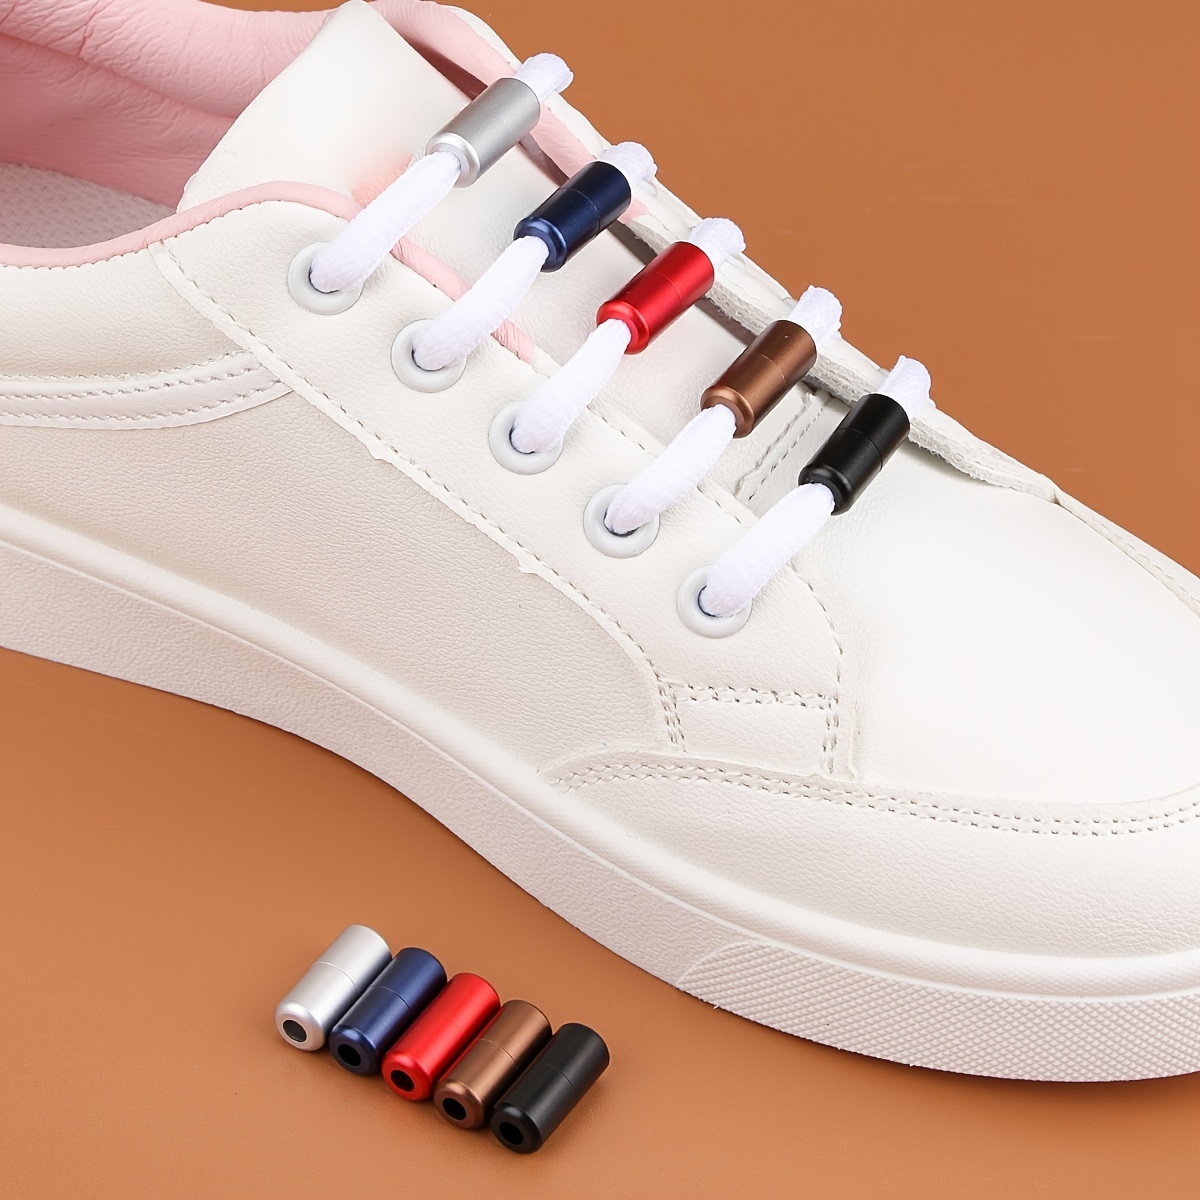 AHADERMAKER 80Pcs 2 Style Column Zinc Alloy Shoelace Buckle Connectors,  Capsule Shape No Tie Shoe Lace Tie Locks Clips Ends, Electrophoresis Black